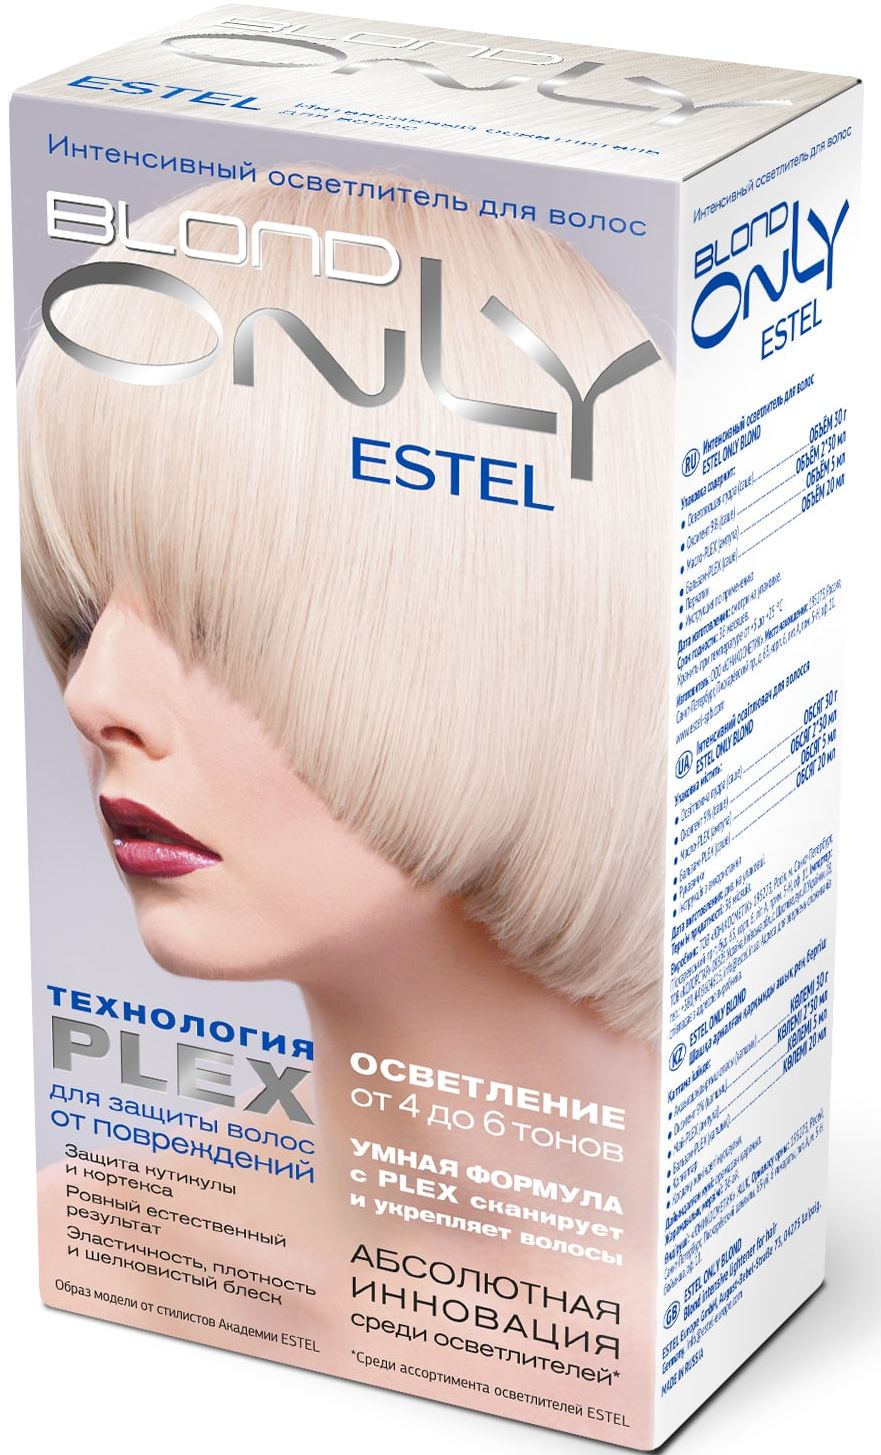 Обесцвечивающие средства волос. OSB интенсивный осветлитель для волос Estel only blond. Estel обесцвечивание до 6 тонов. Estel осветление осветлитель д/волос интенсивный Estel only blond. Эстель. Only blond осветлитель.